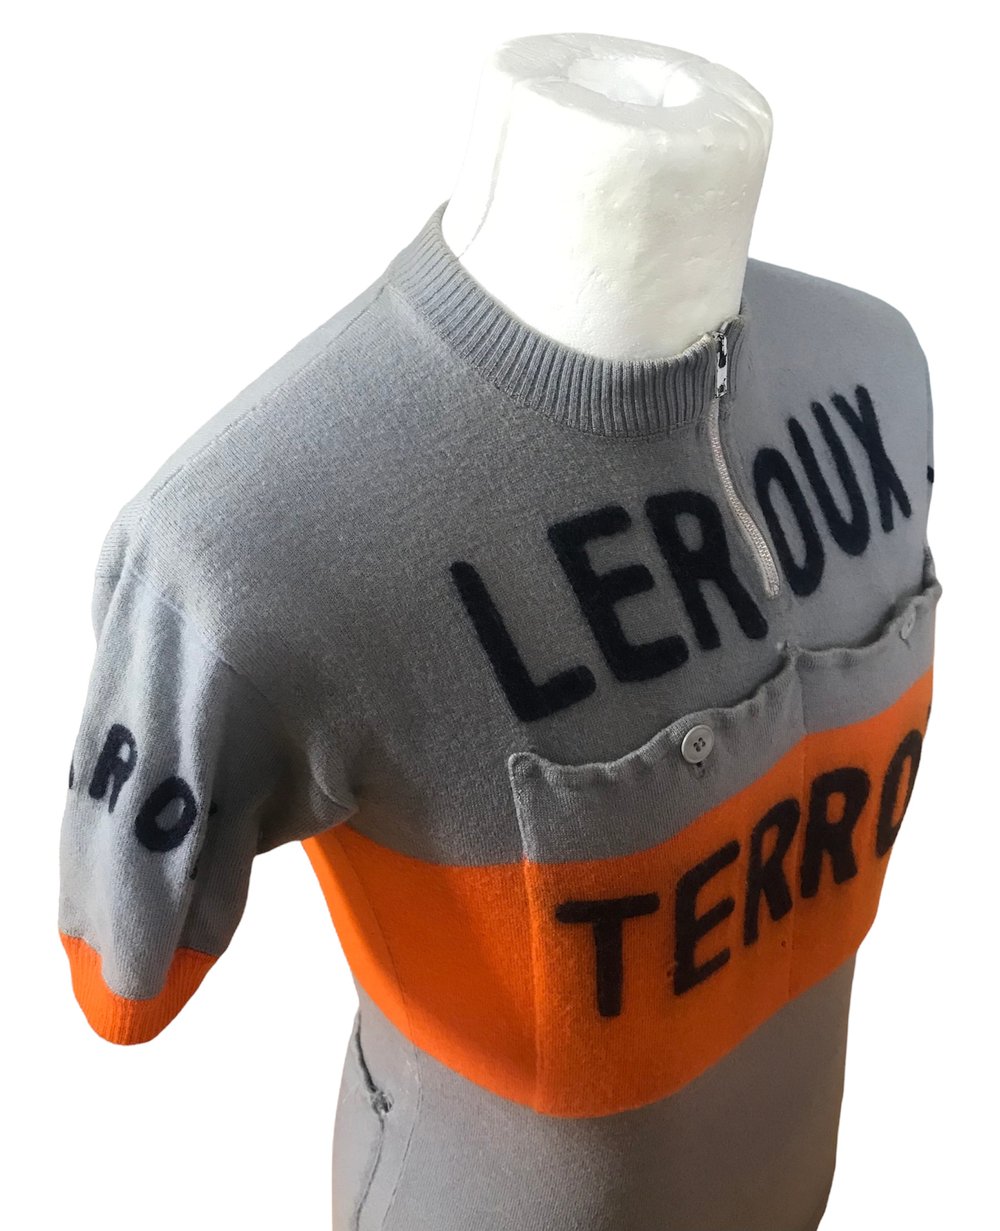 1963 ðŸ‡«ðŸ‡· ACBB Leroux Terrot - Used amateur team jersey